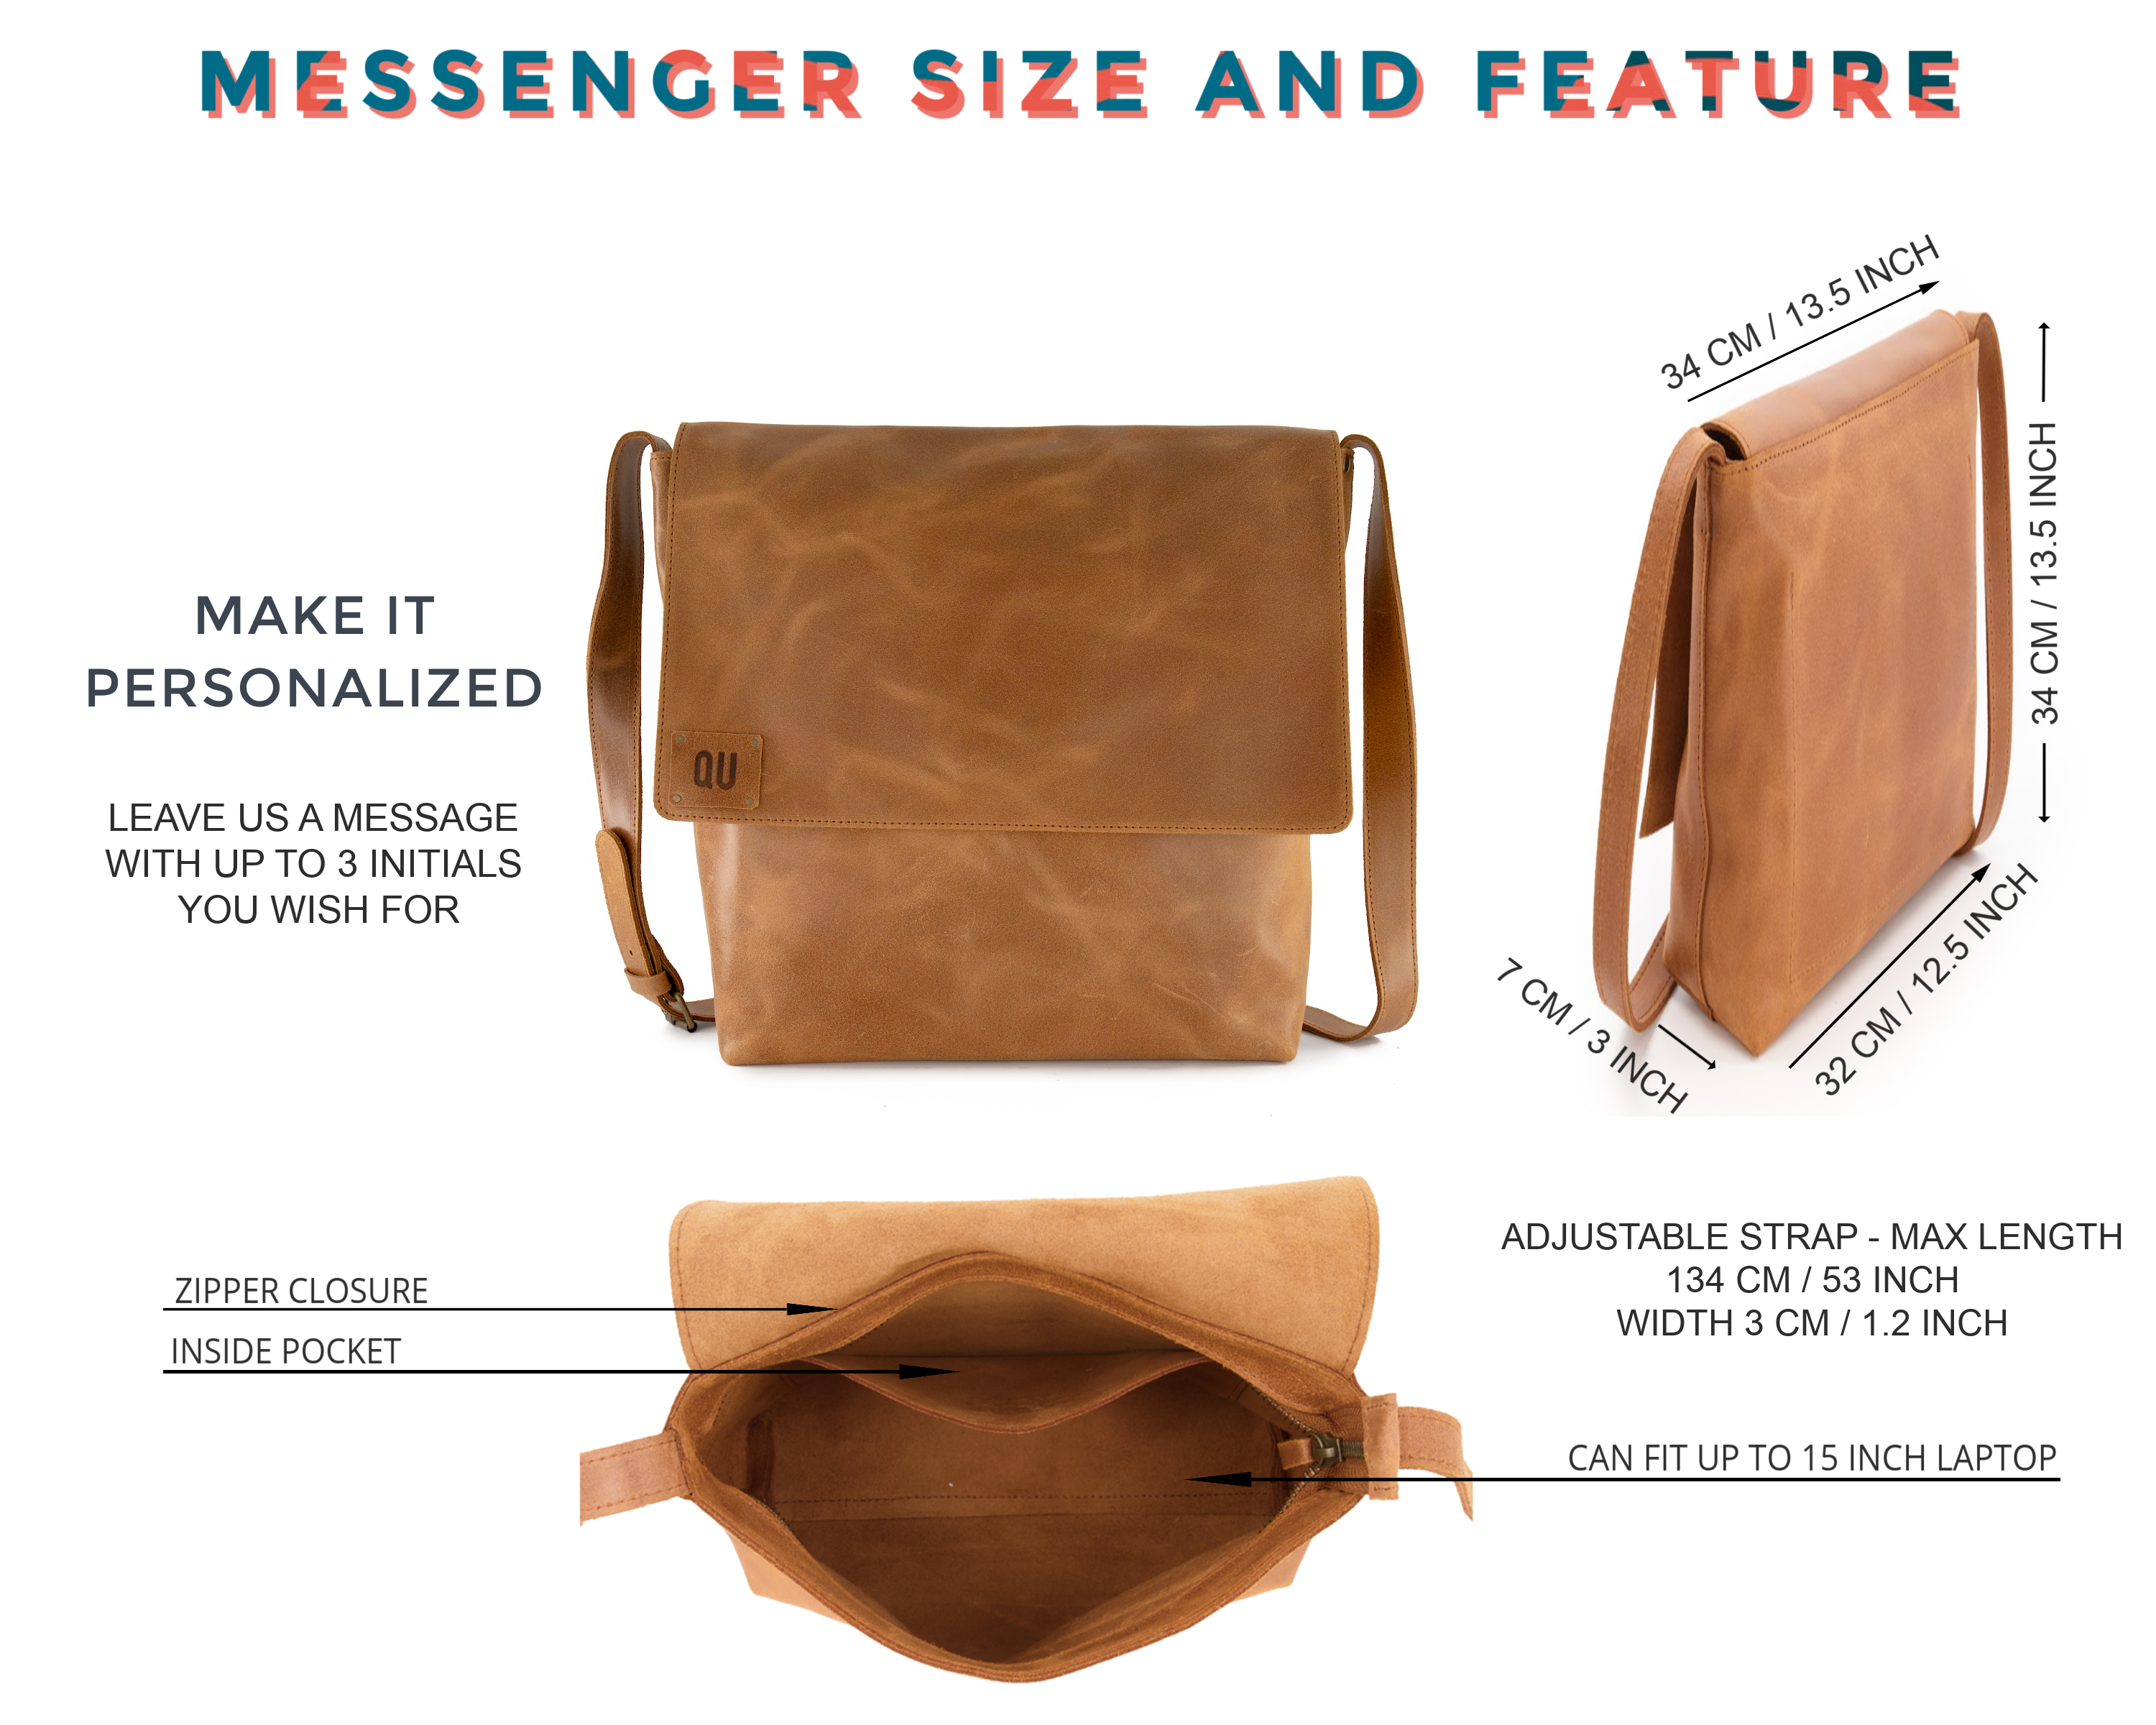 Women Multi Compartment Tote Purse Bags Shoulder Bag Crossbody Bag Canvas  Handbag Top Handle Bag Messenger Bag